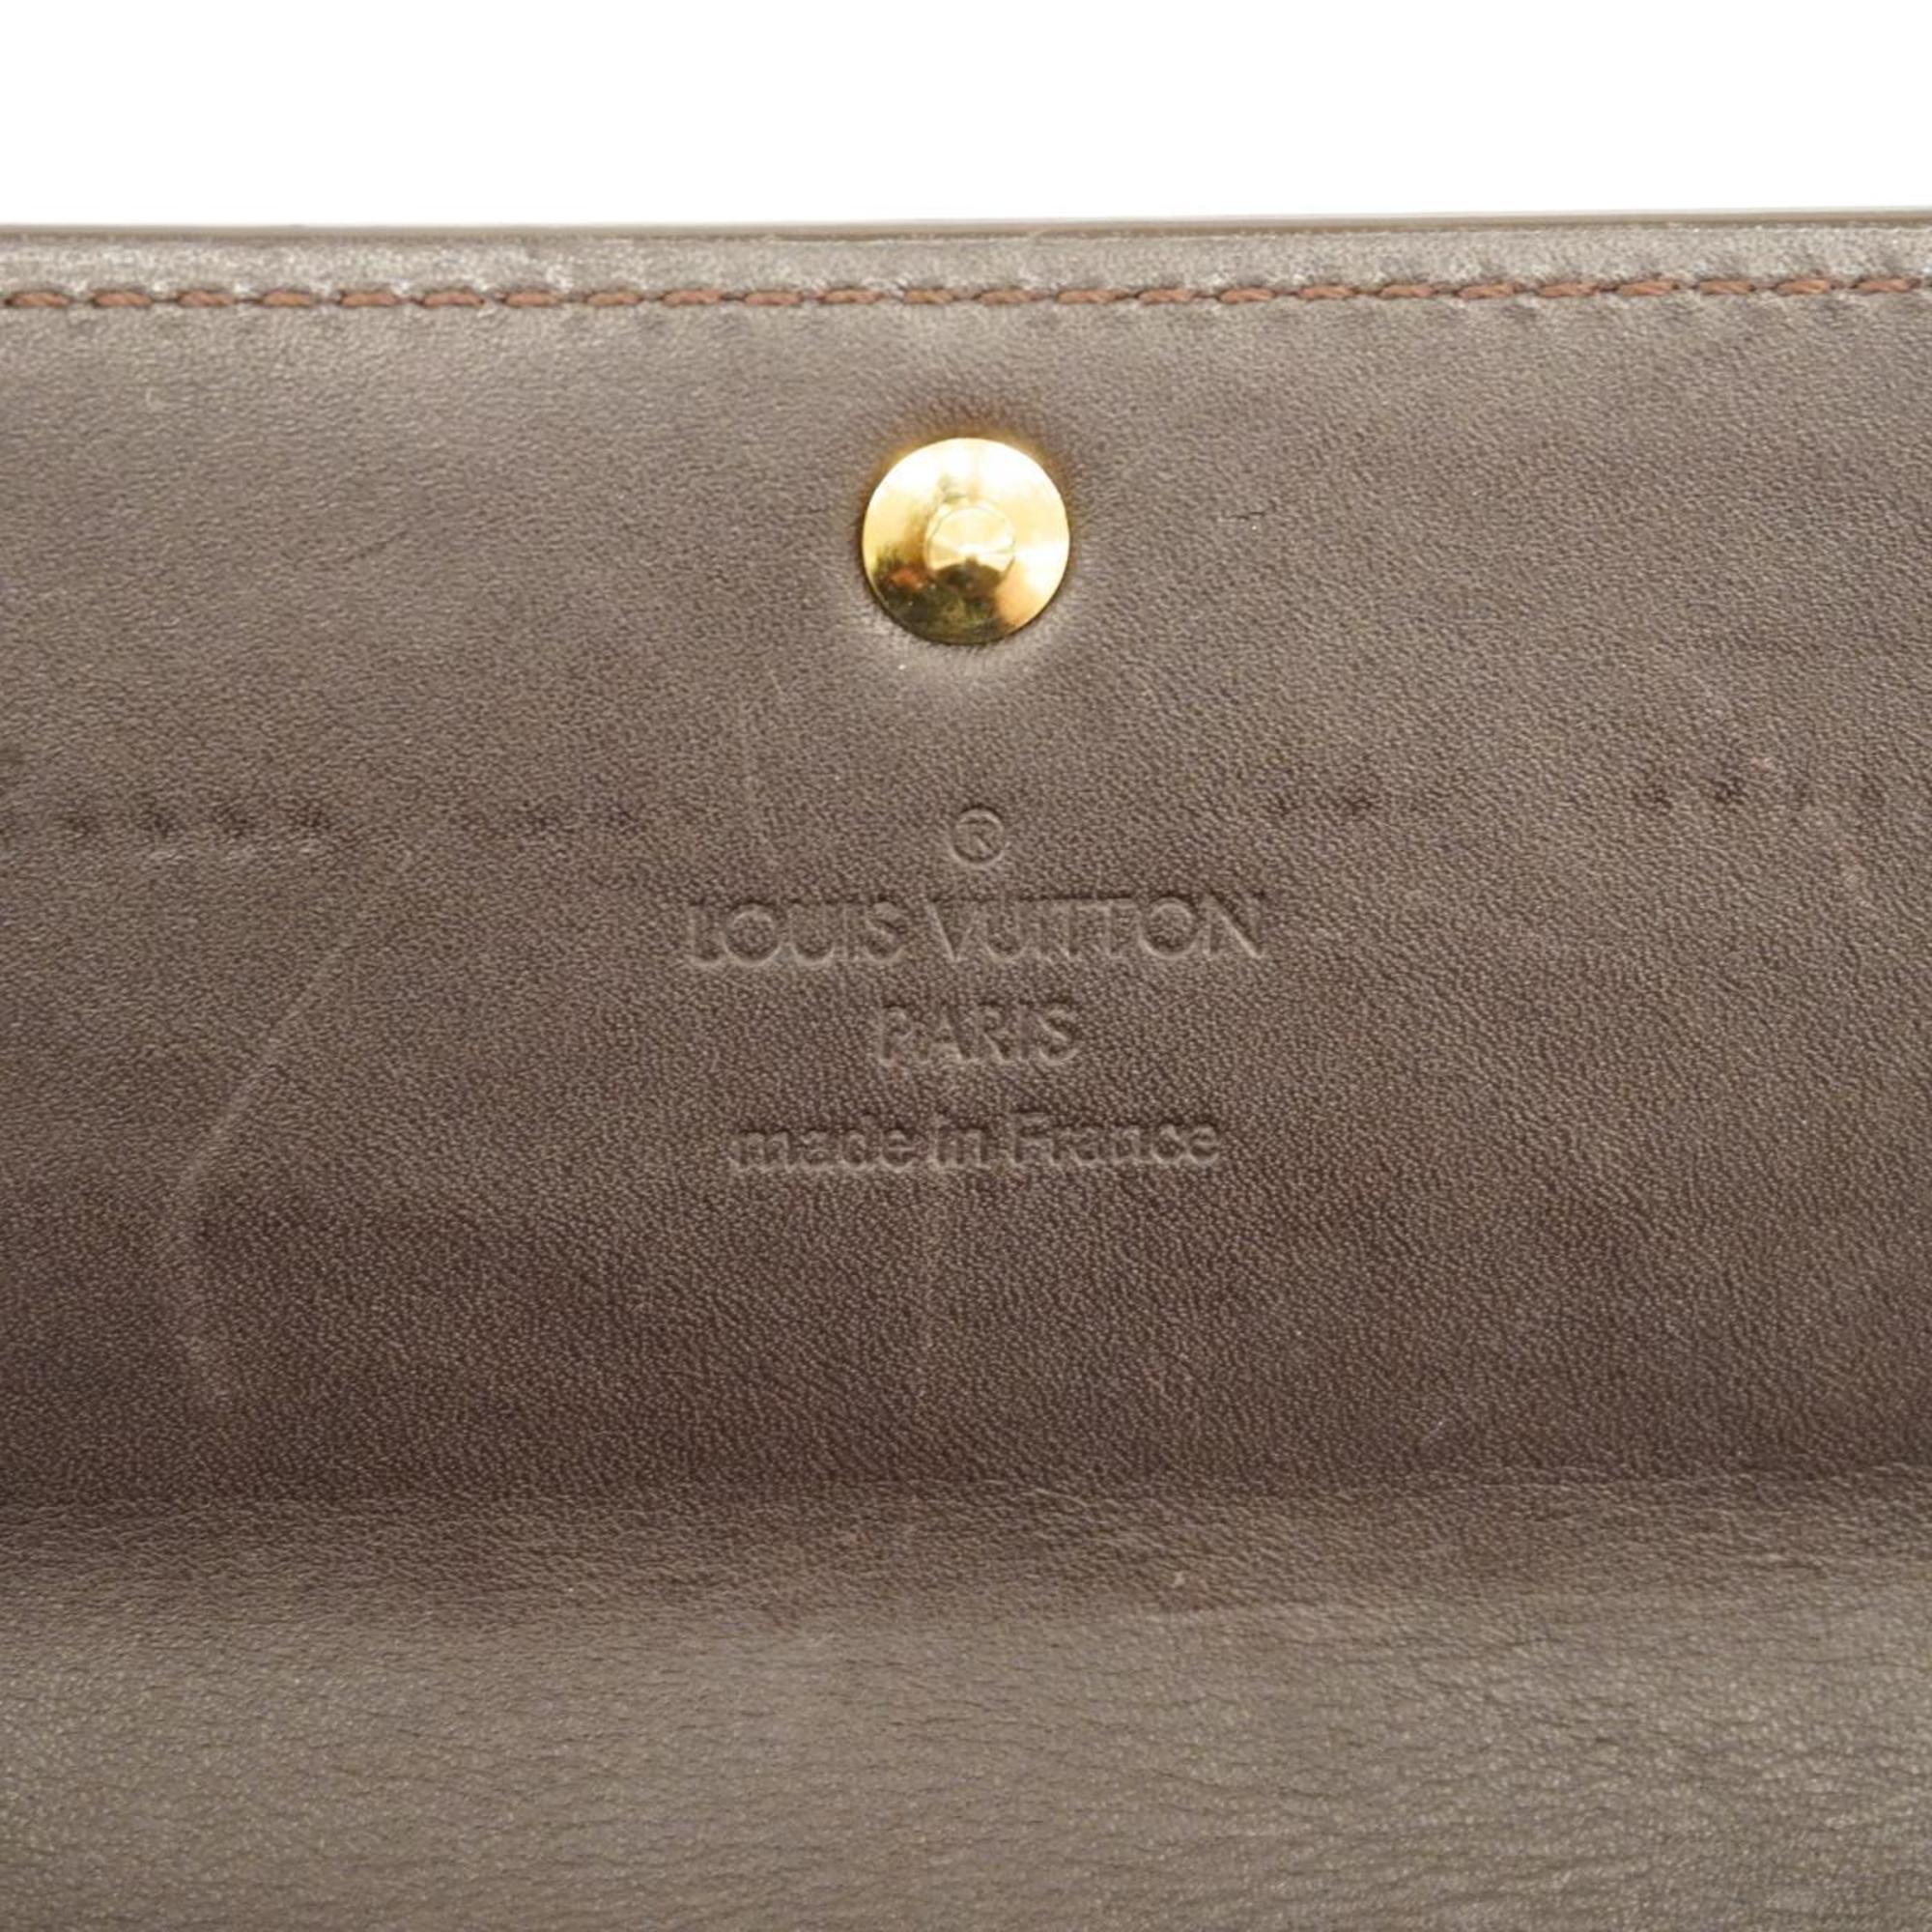 ルイ・ヴィトン(Louis Vuitton) ルイ・ヴィトン 長財布 ヴェルニ ポルトフォイユサラ M93524 アマラントメンズ レディース